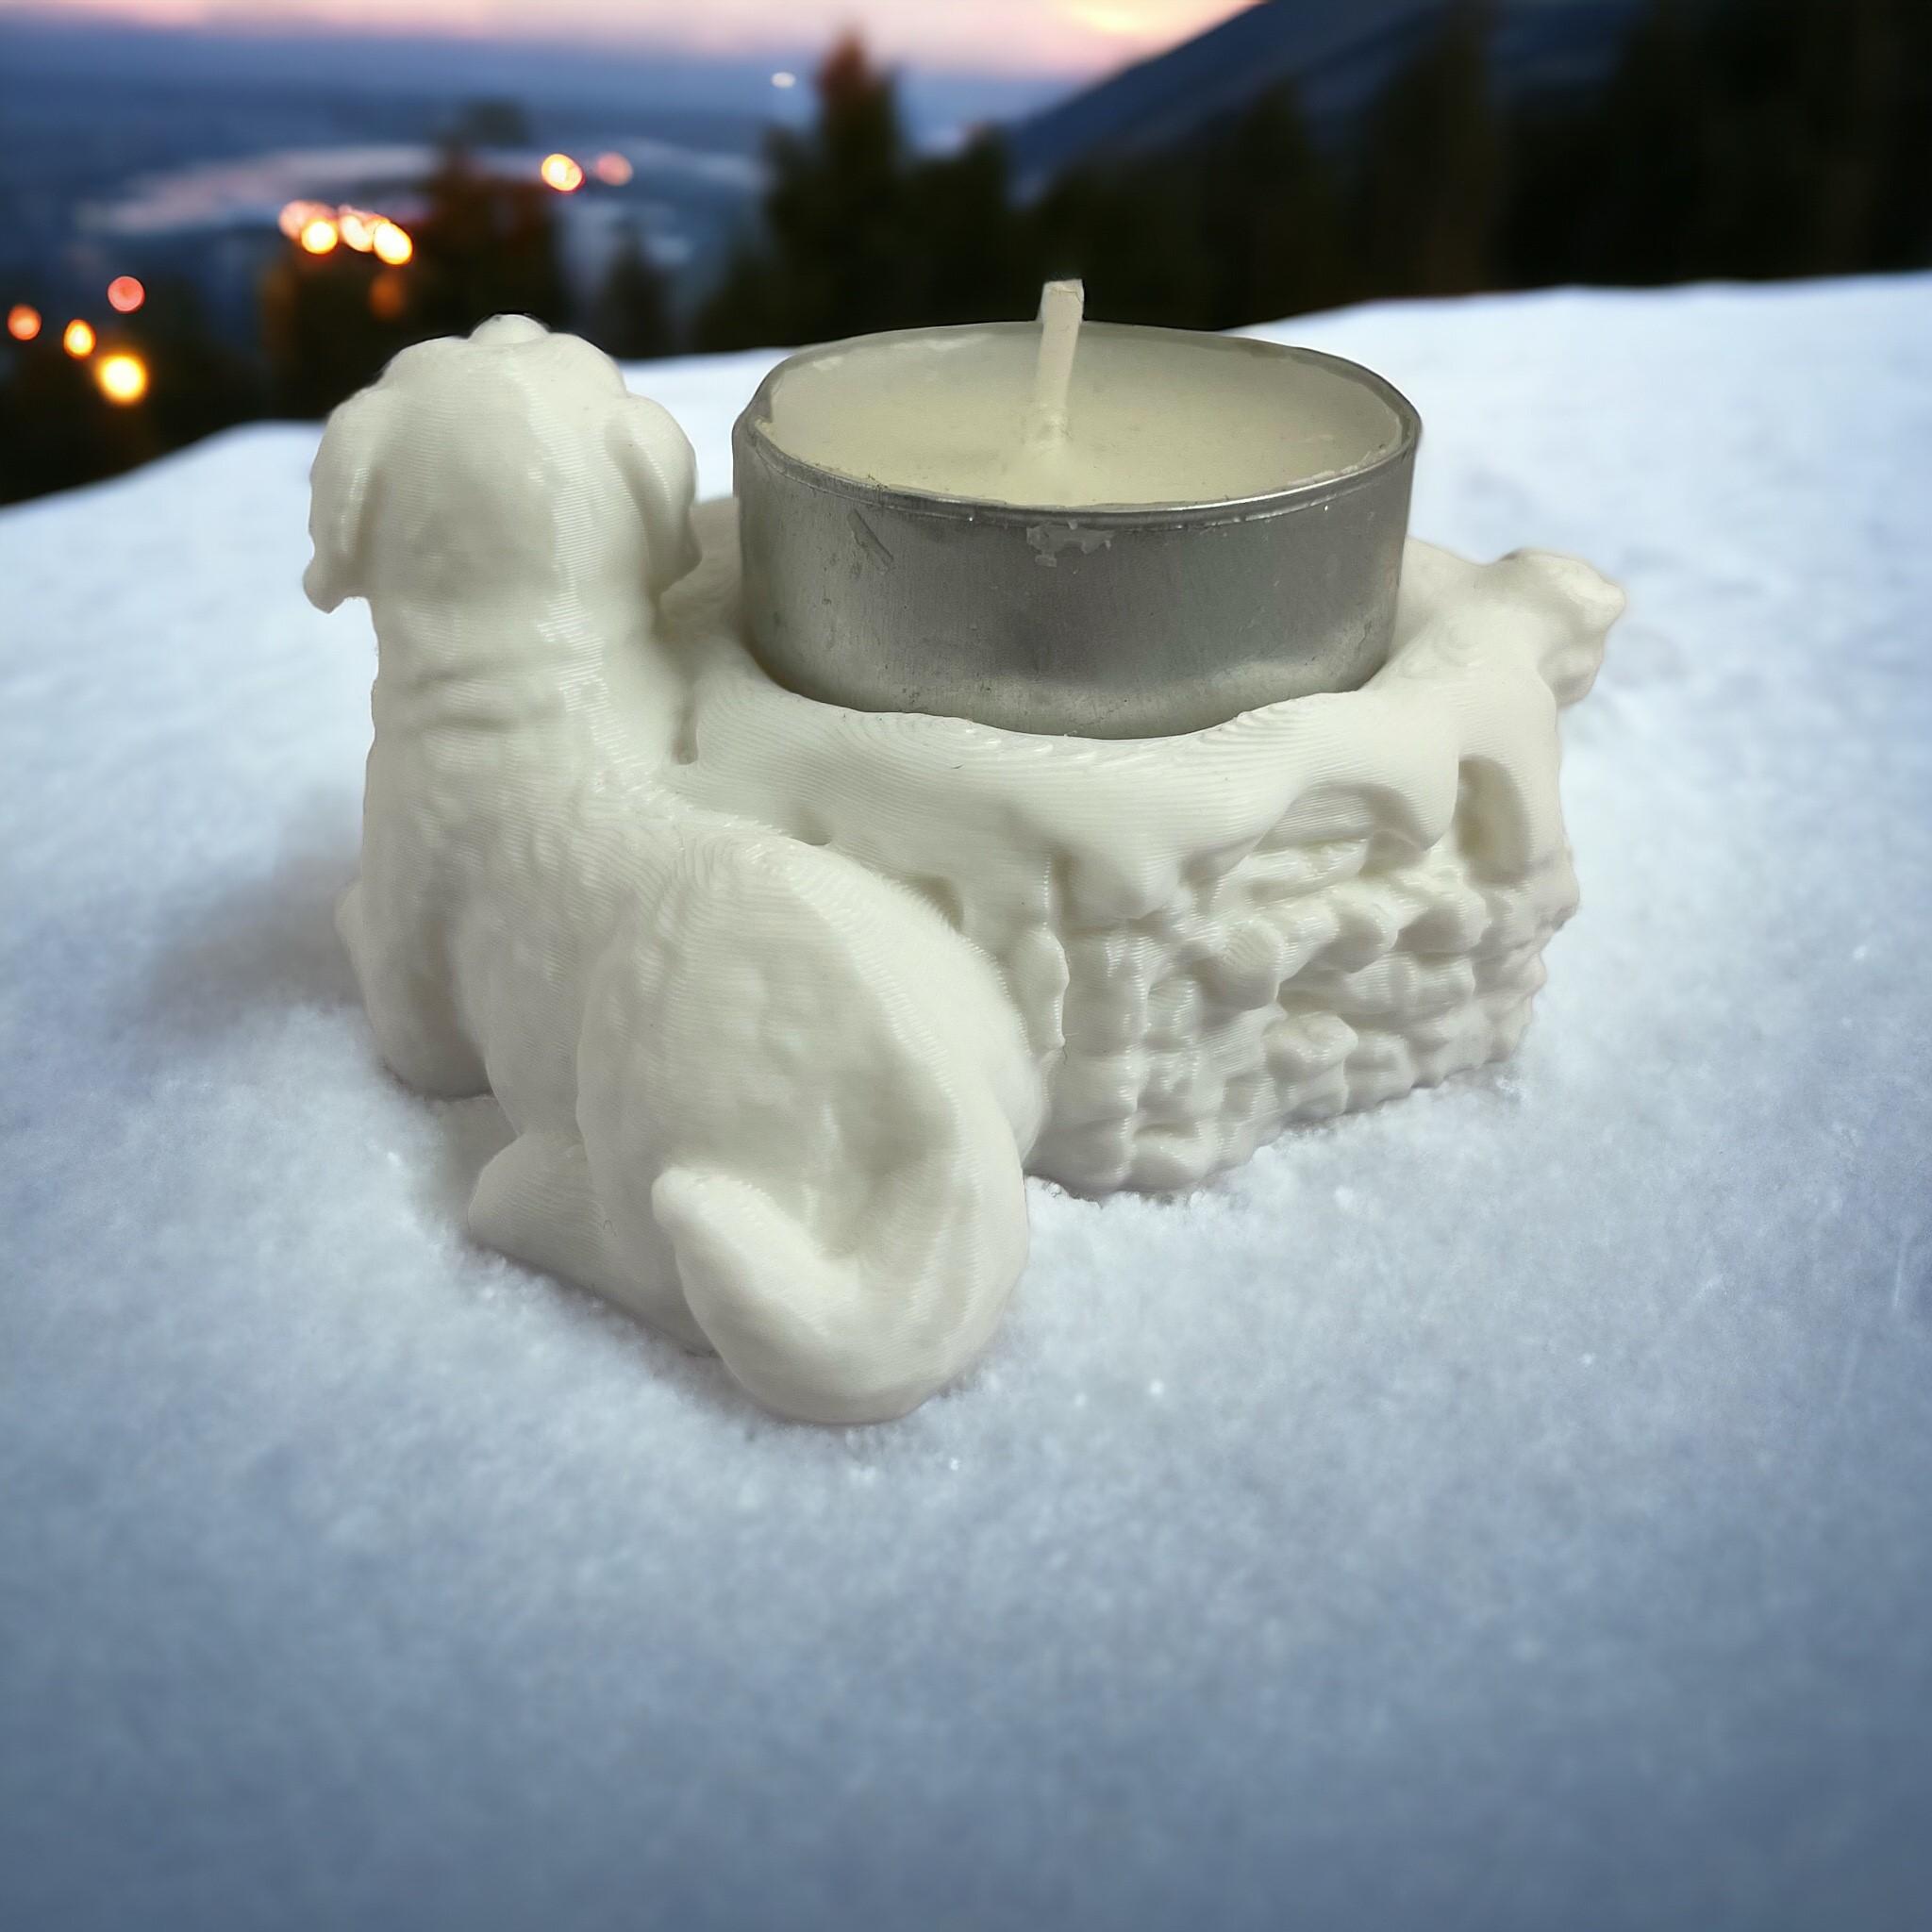 Saint bernard candle holder 3d model